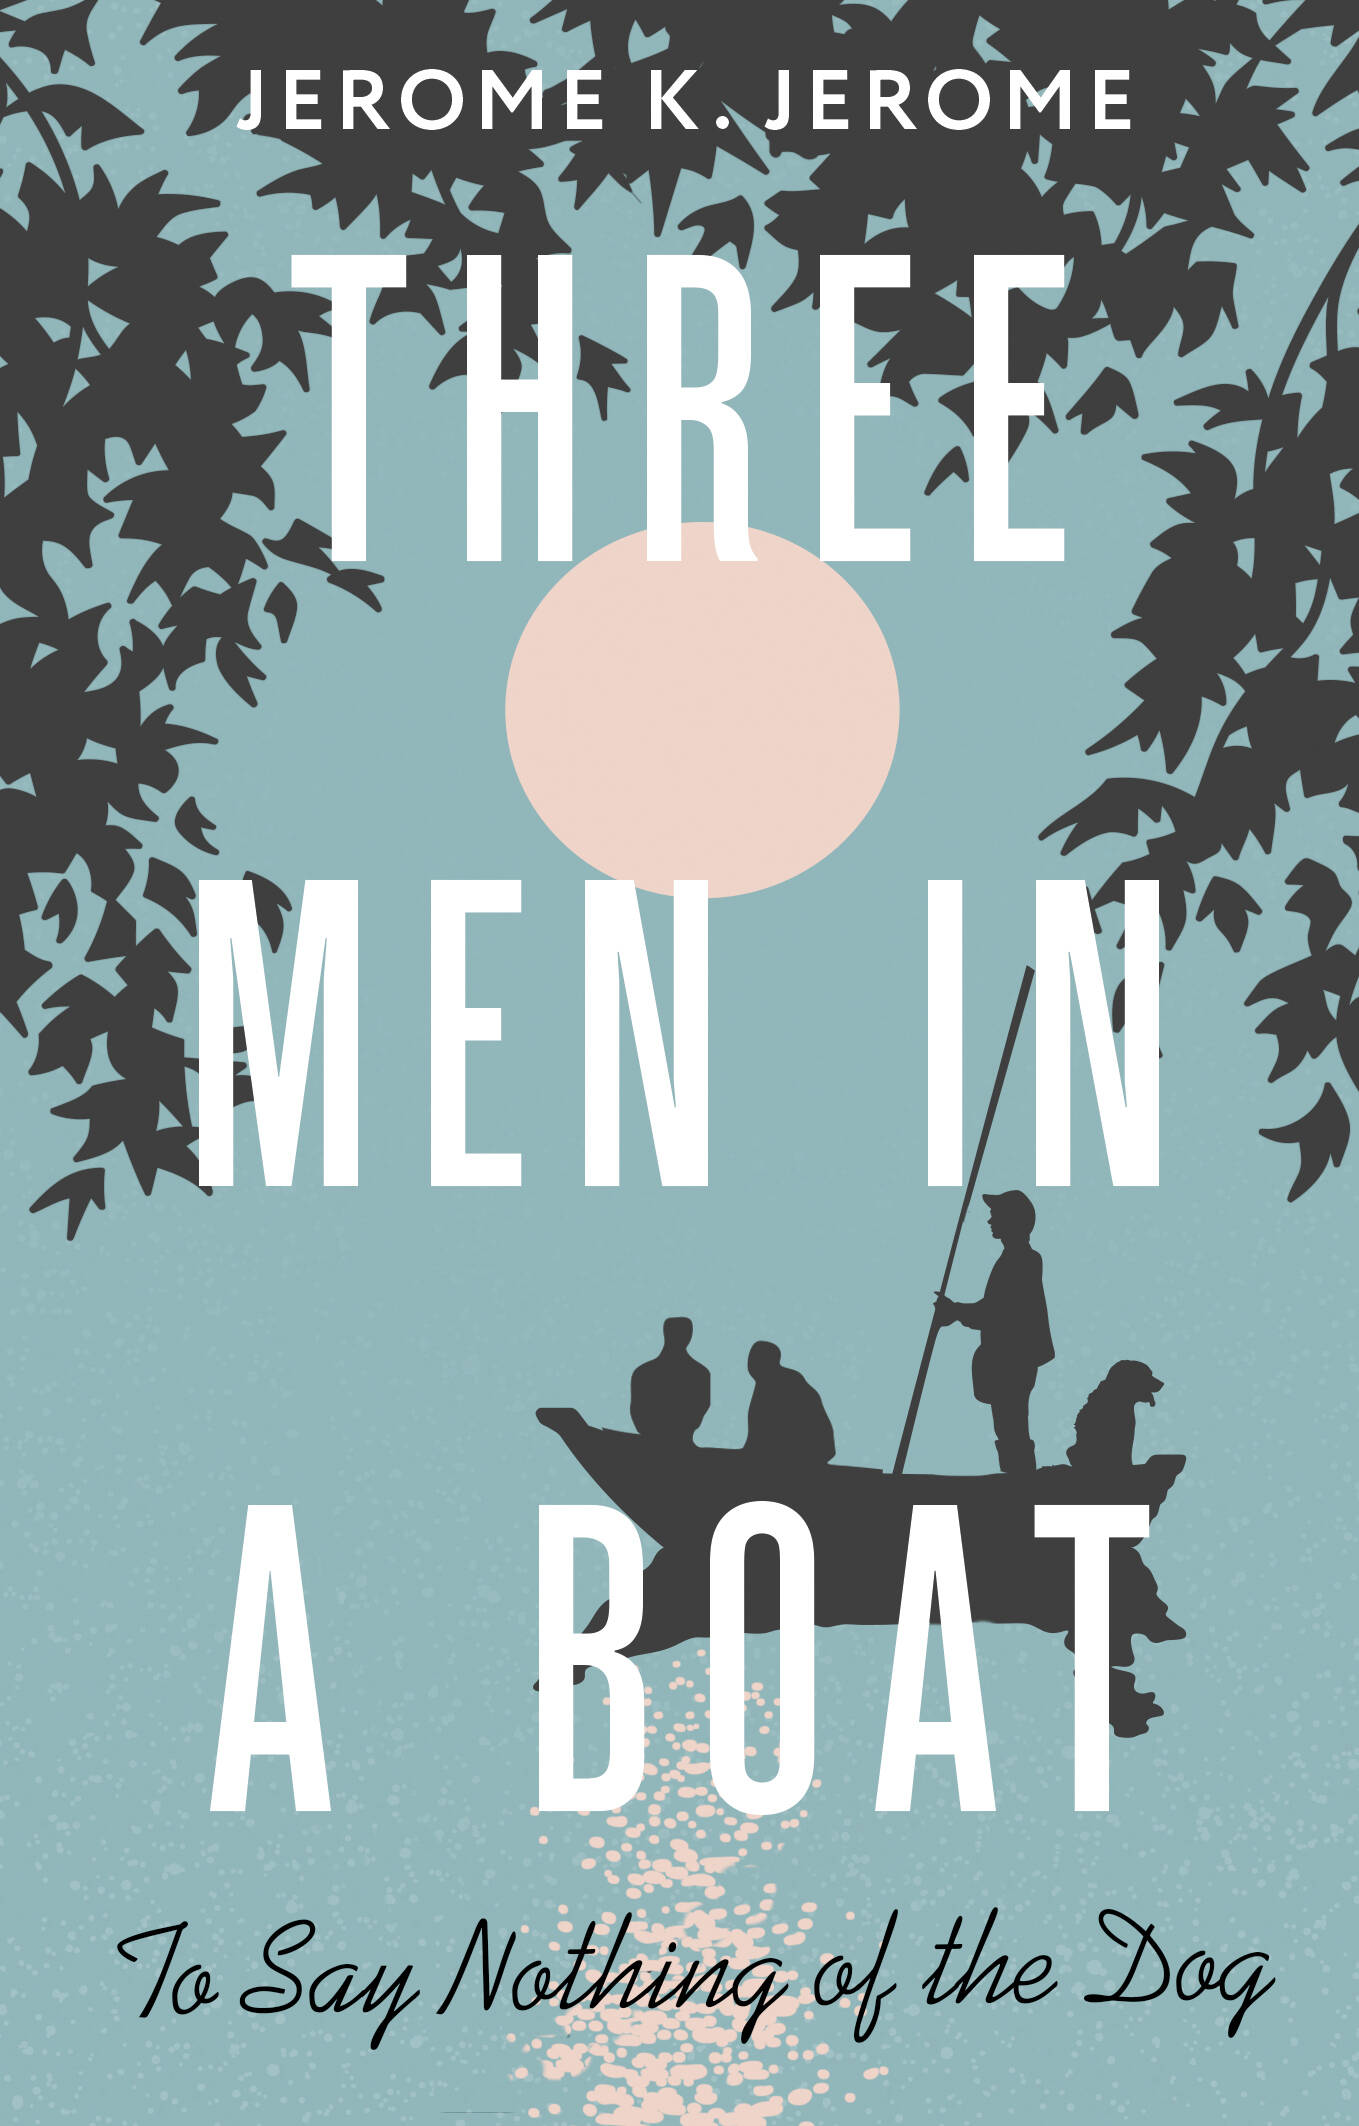 Джером Джером Клапка Three Men in a Boat (To say Nothing of the Dog)